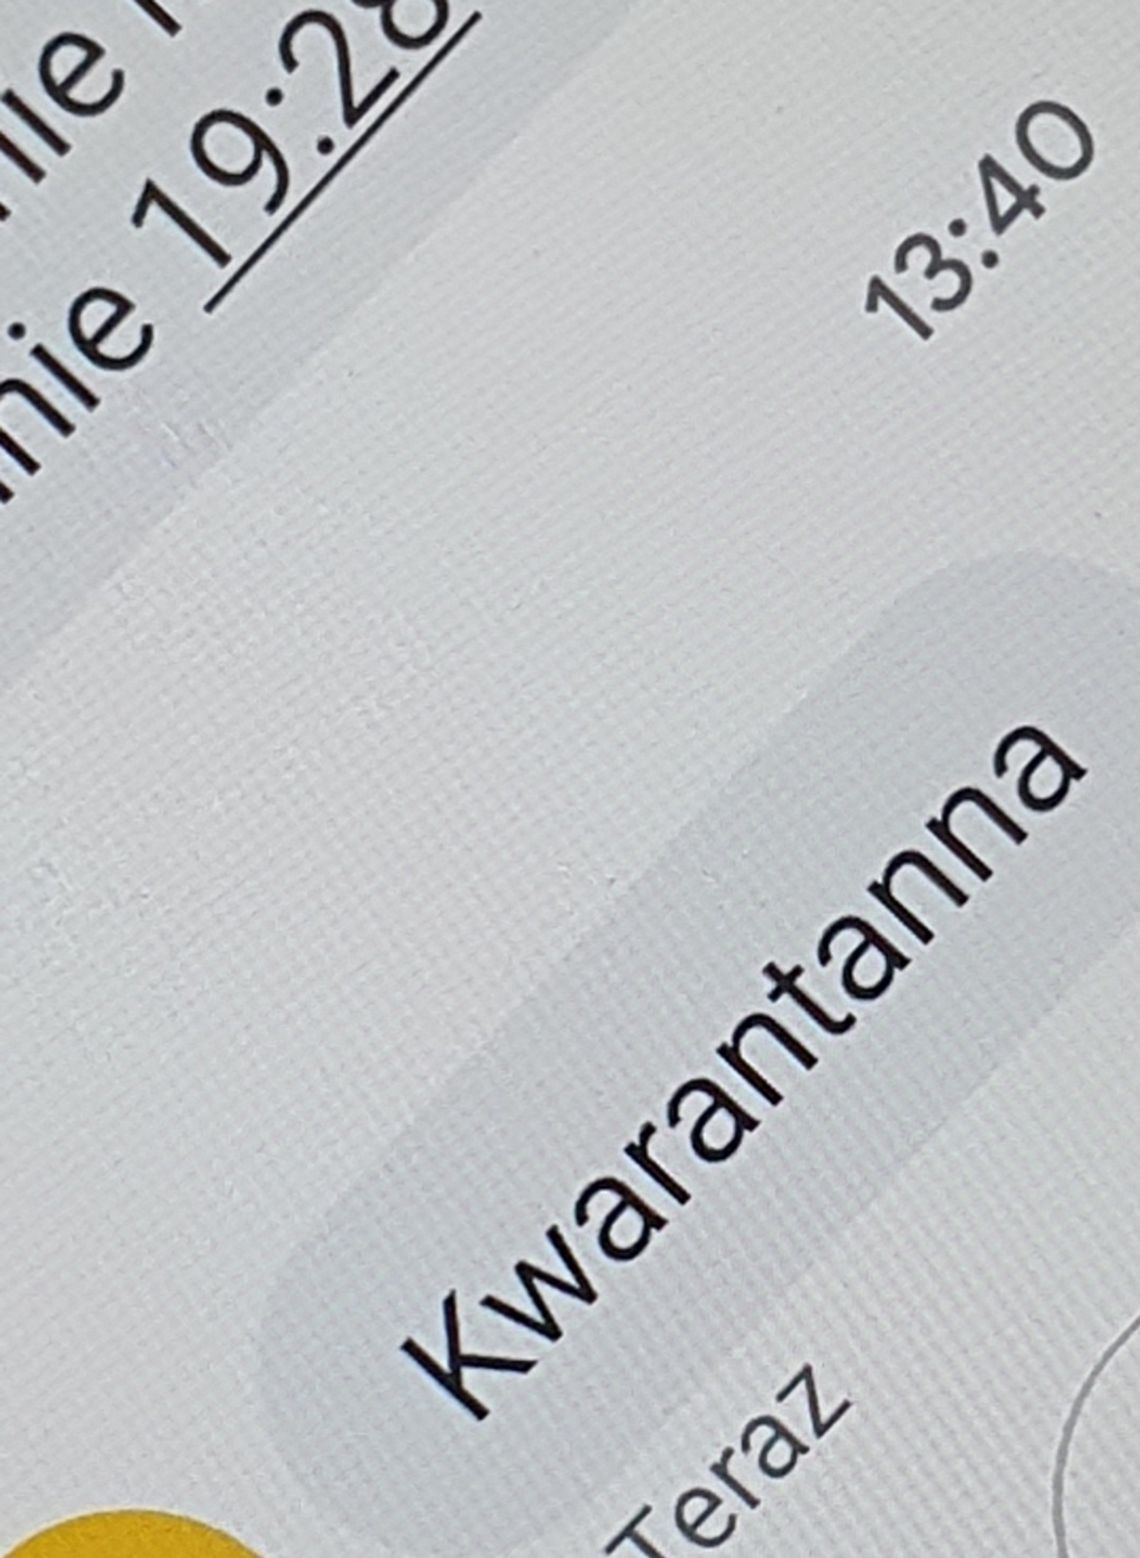 GIS ostrzega: Uwaga na SMS o treści "Kwarantanna"! 